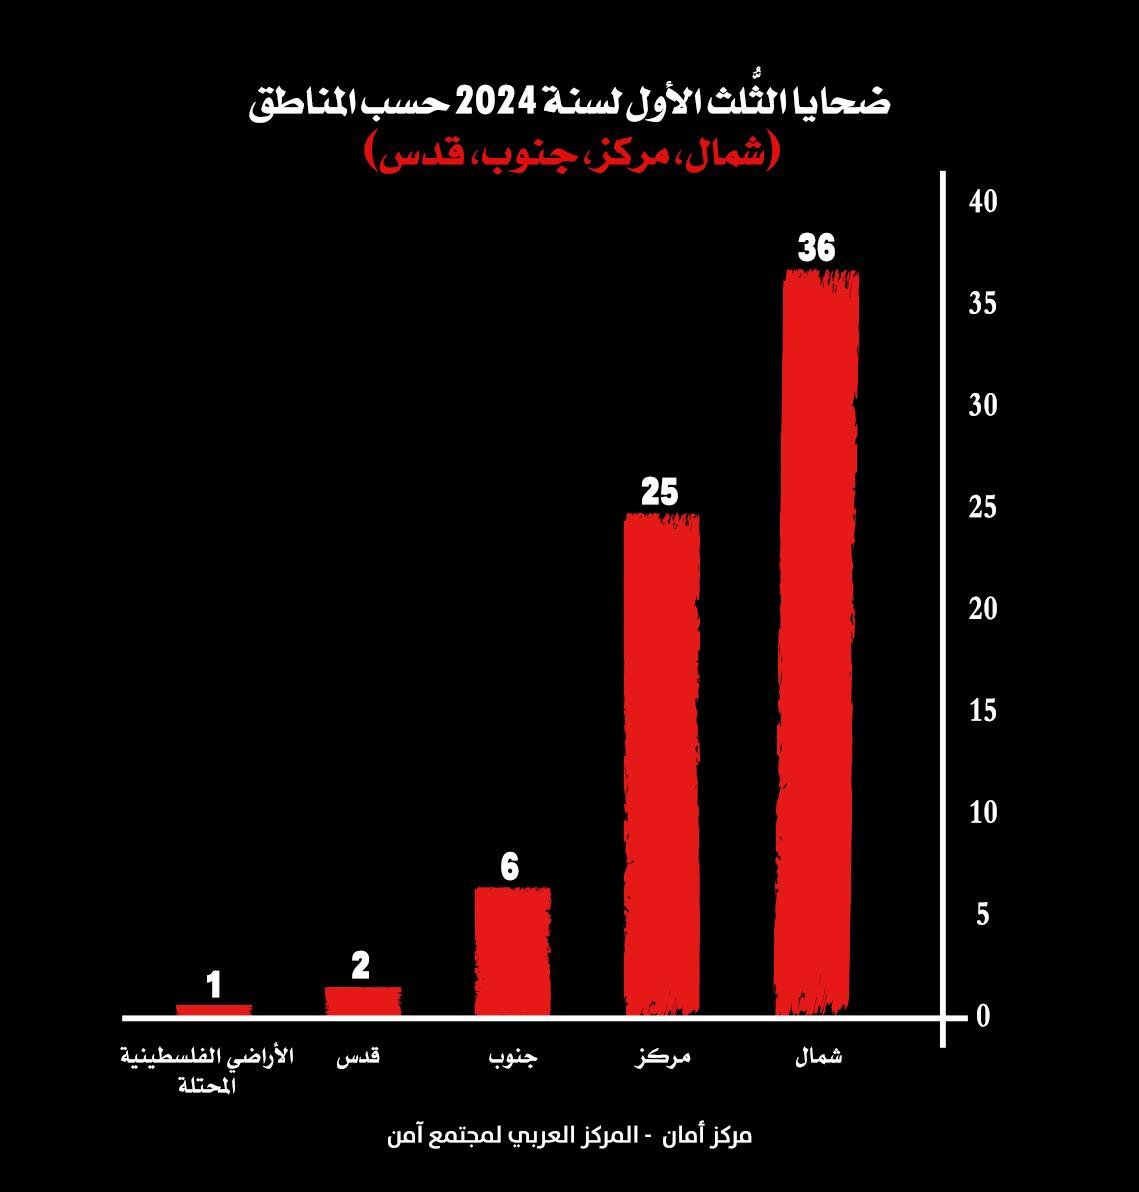 مركز أمان: الثلث الأول لعام 2024 هو الأعلى في أعداد ضحايا الجريمة والعنف في المجتمع العربي: 69 ضحية-4